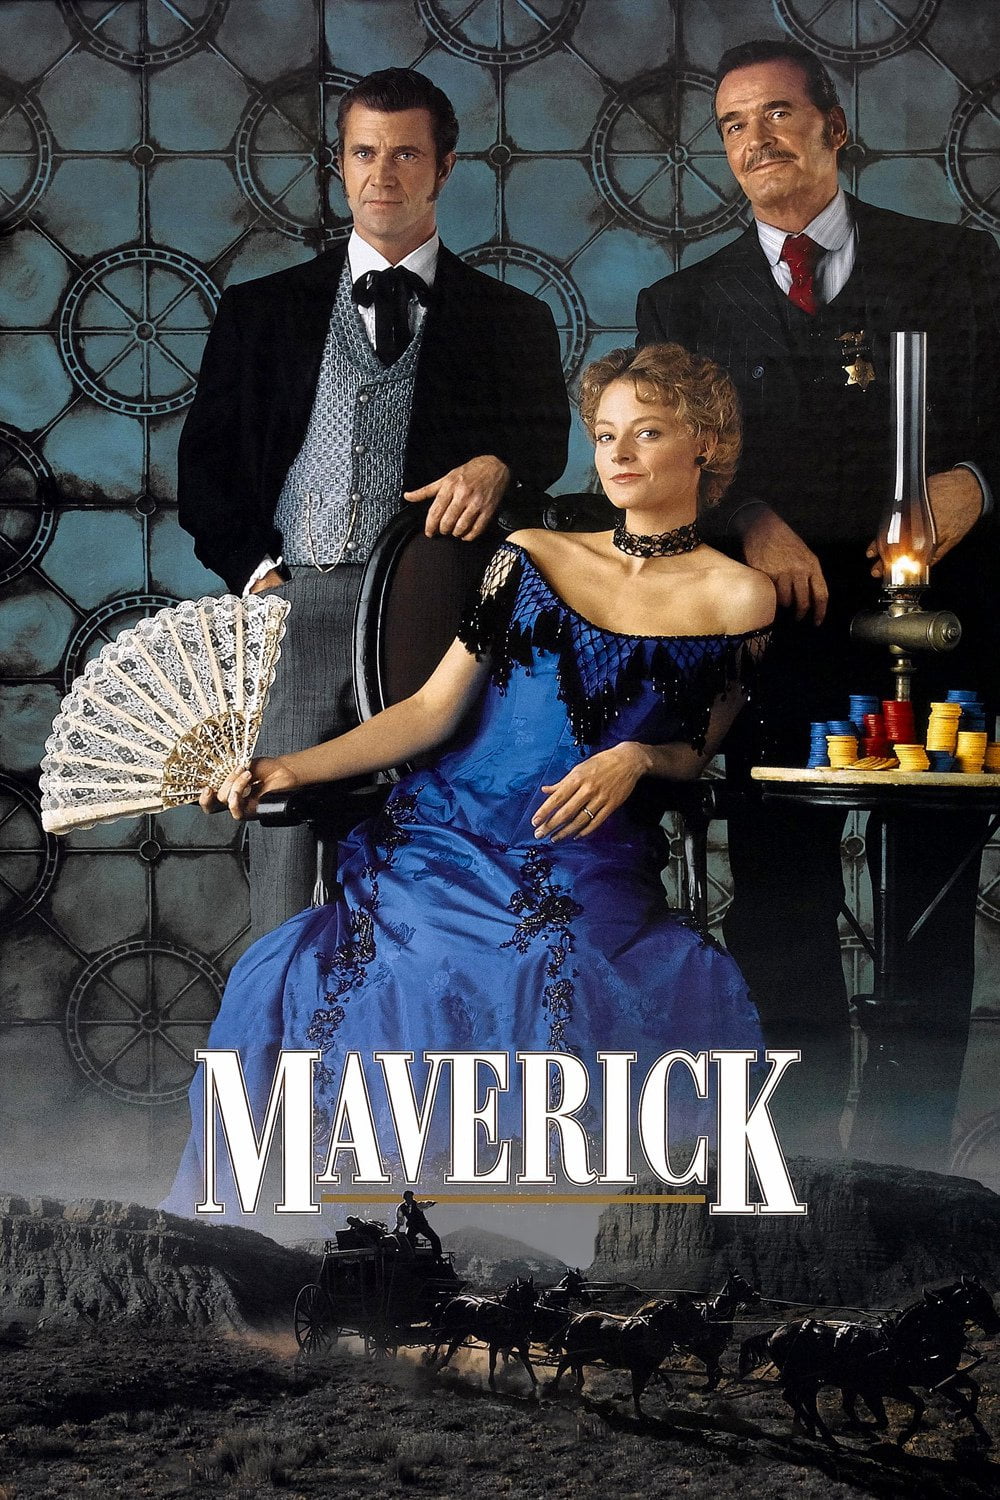 Poster for the filmen "Maverick"